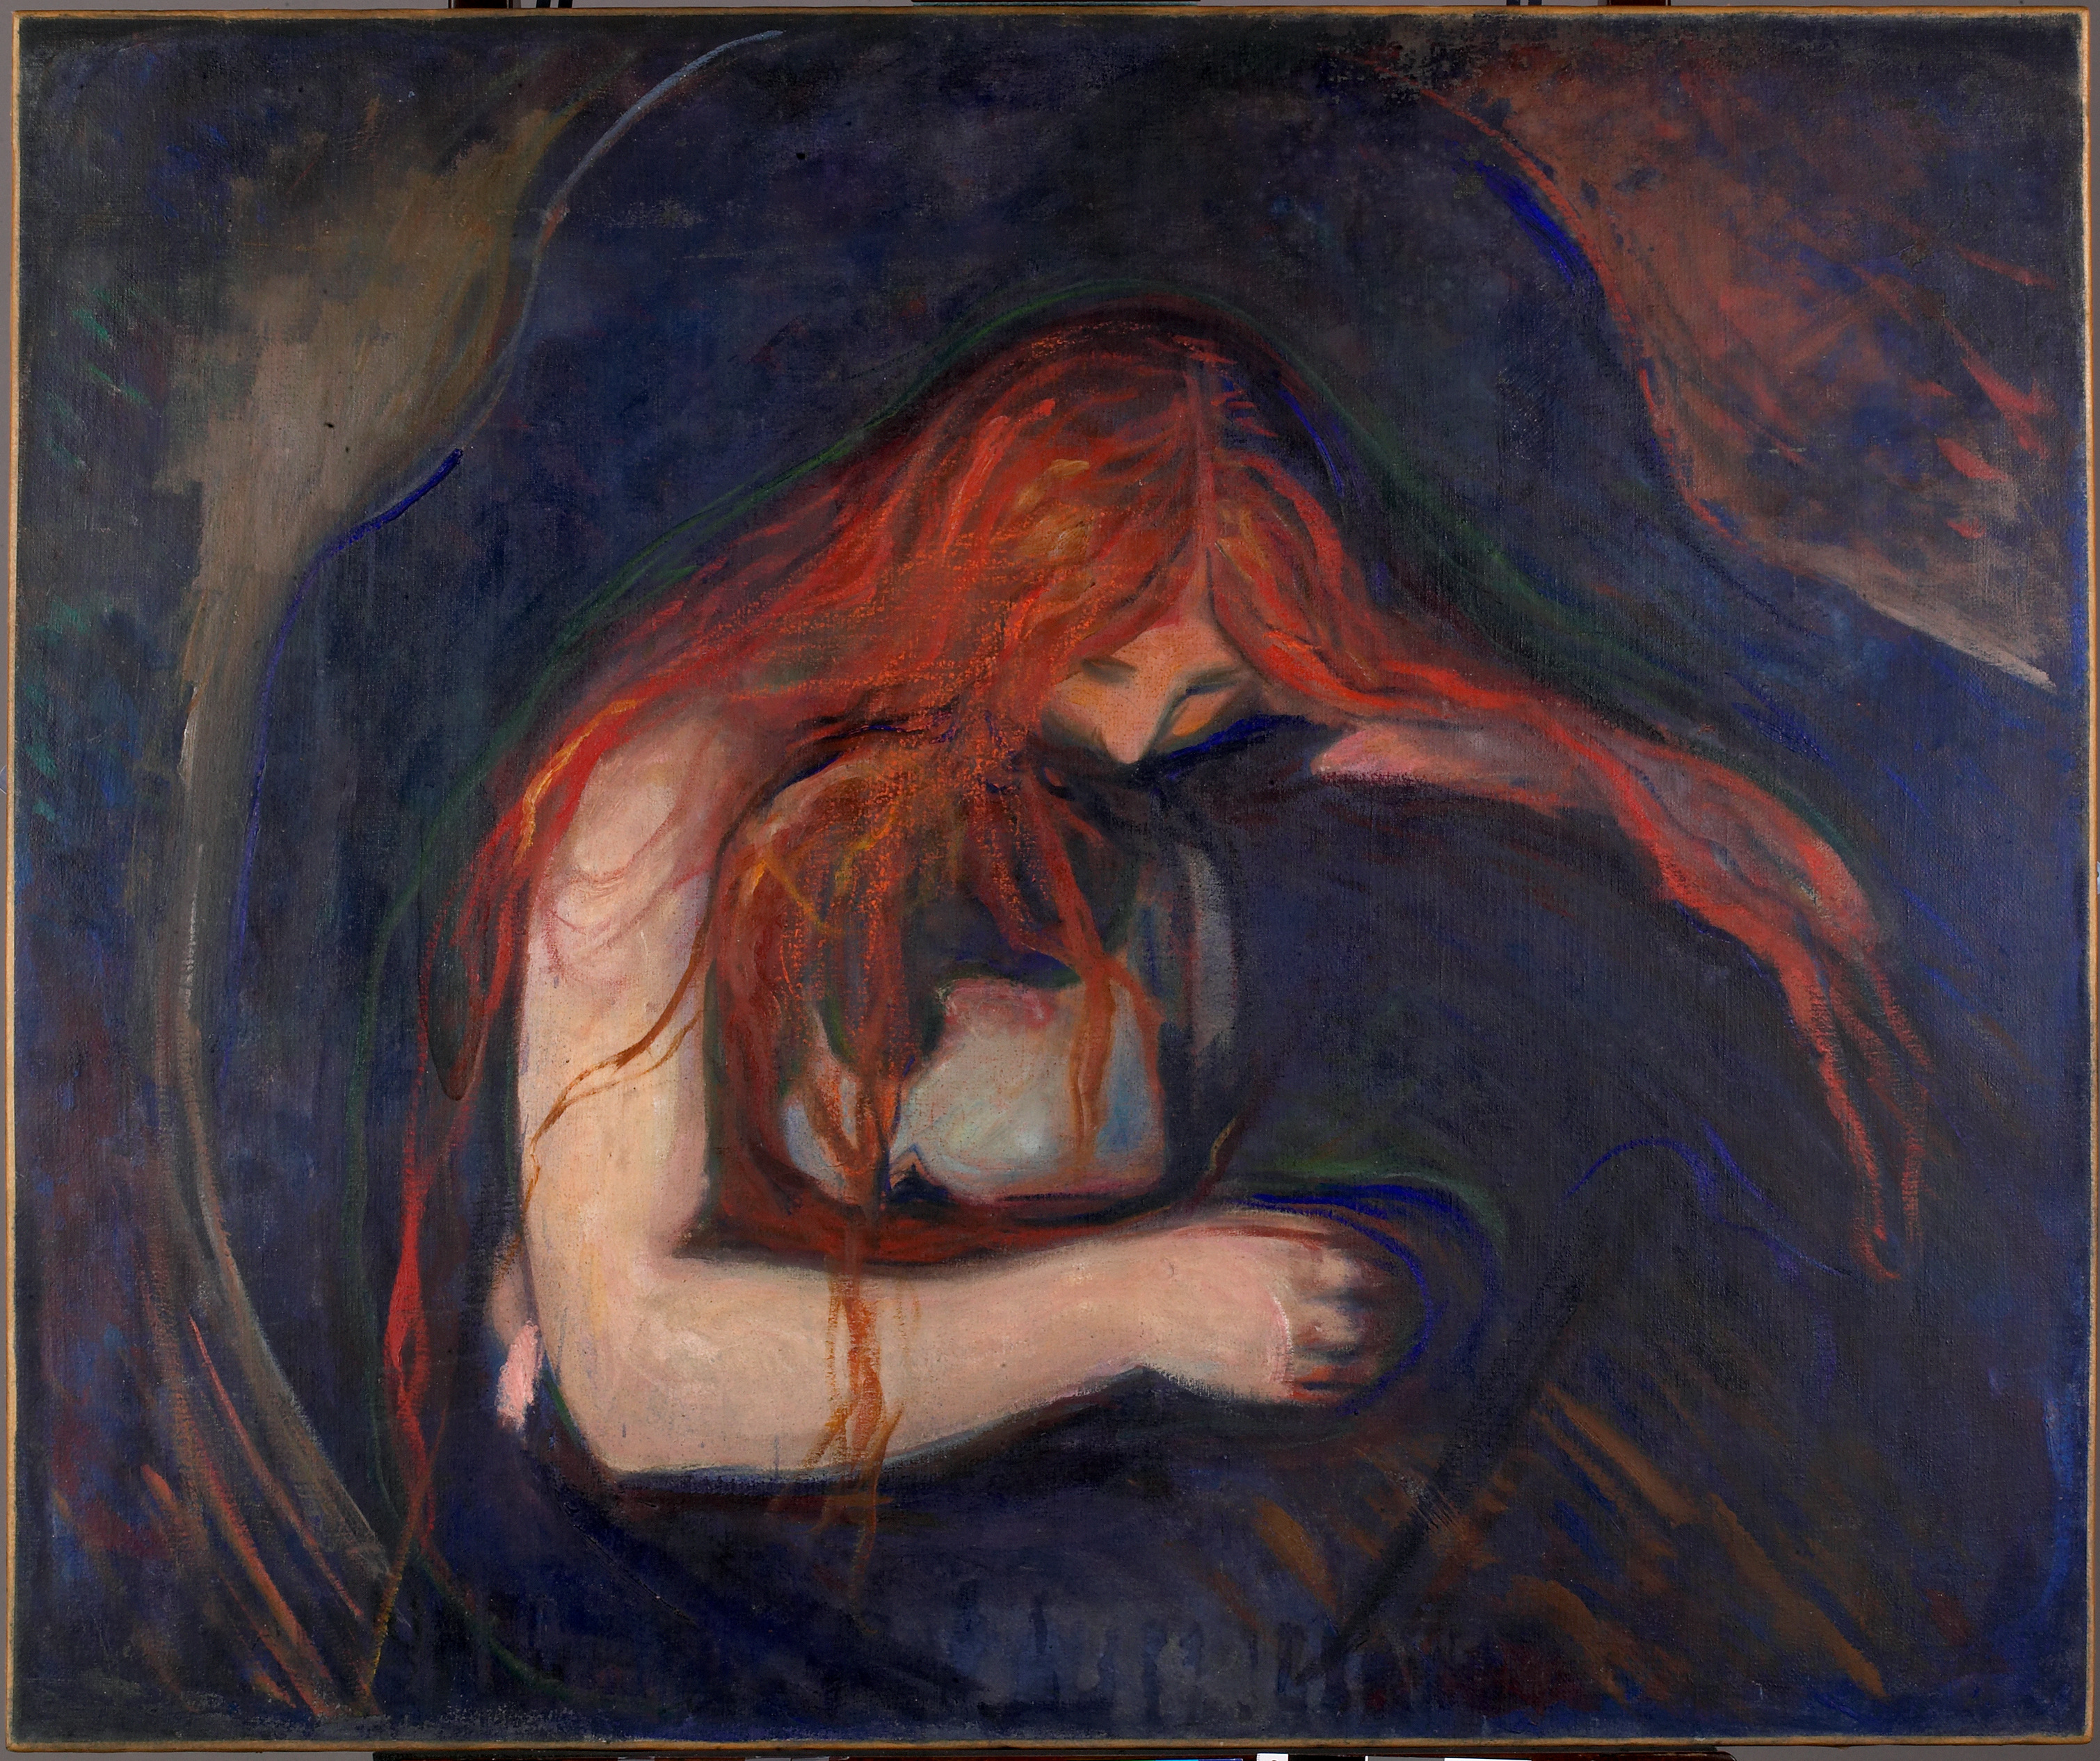 Βρυκόλακας by Edvard Munch - 1895 